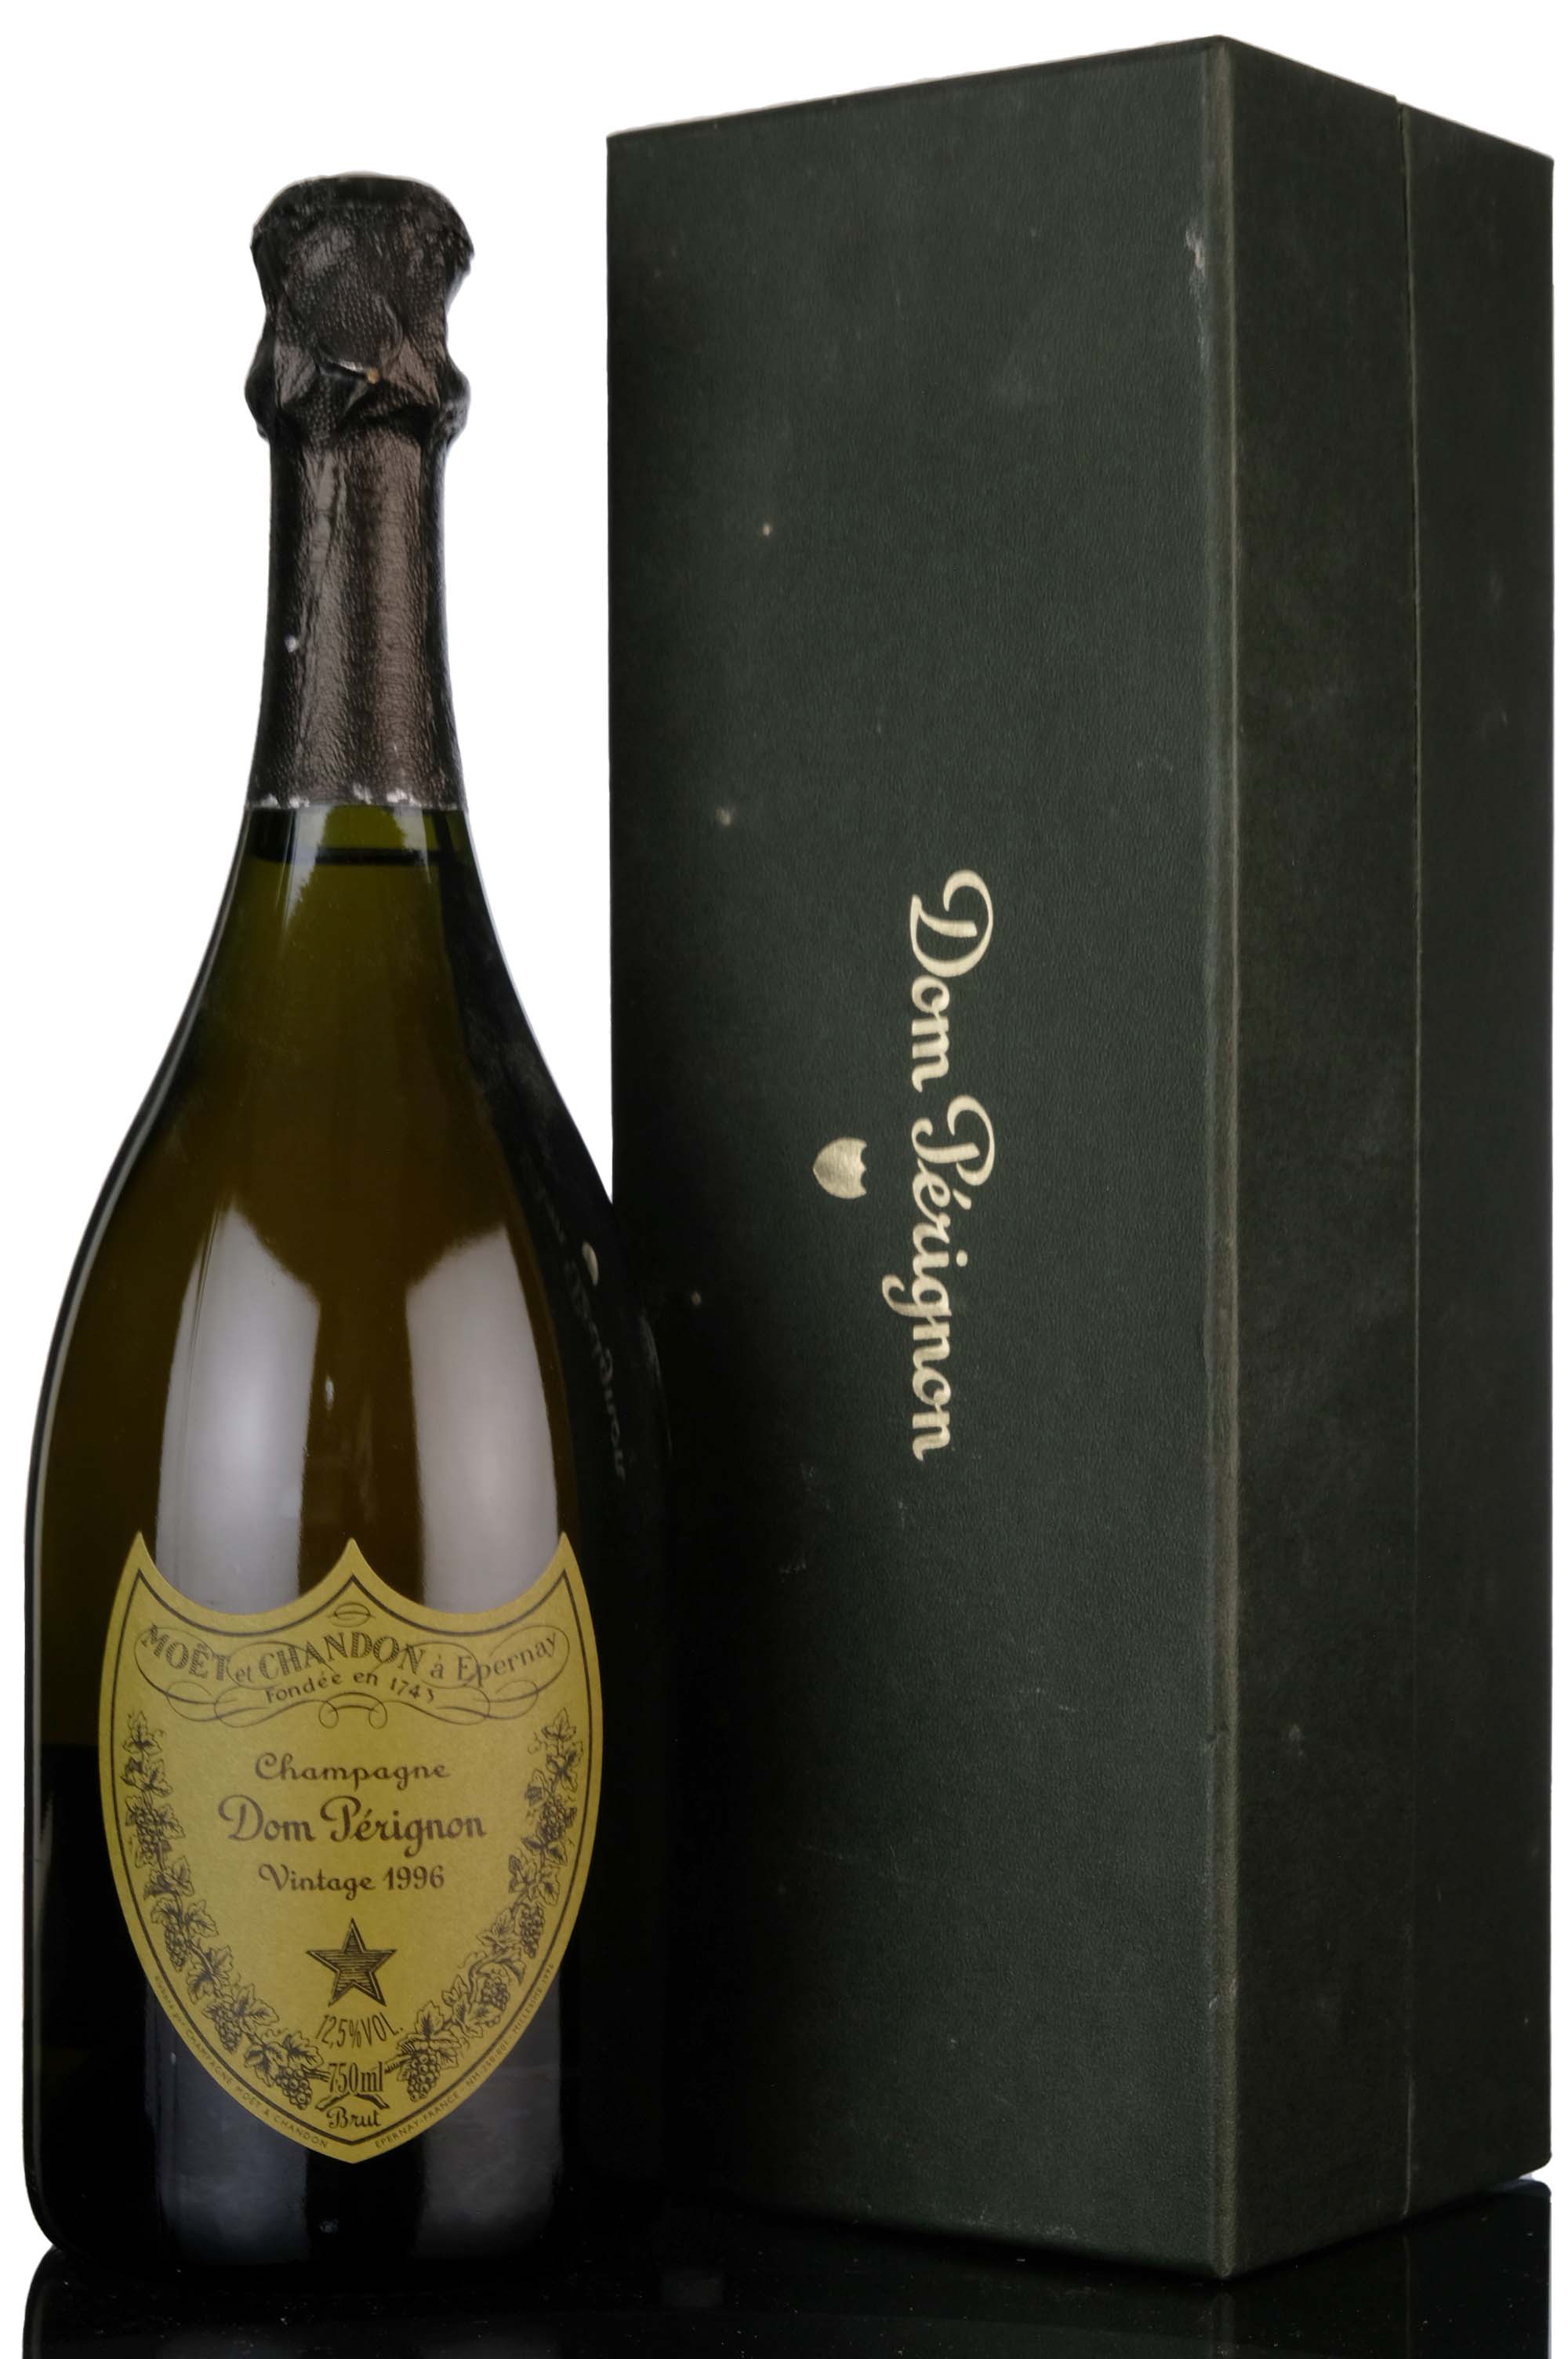 Moet & Chandon Dom Perignon 1996 Vintage Champagne